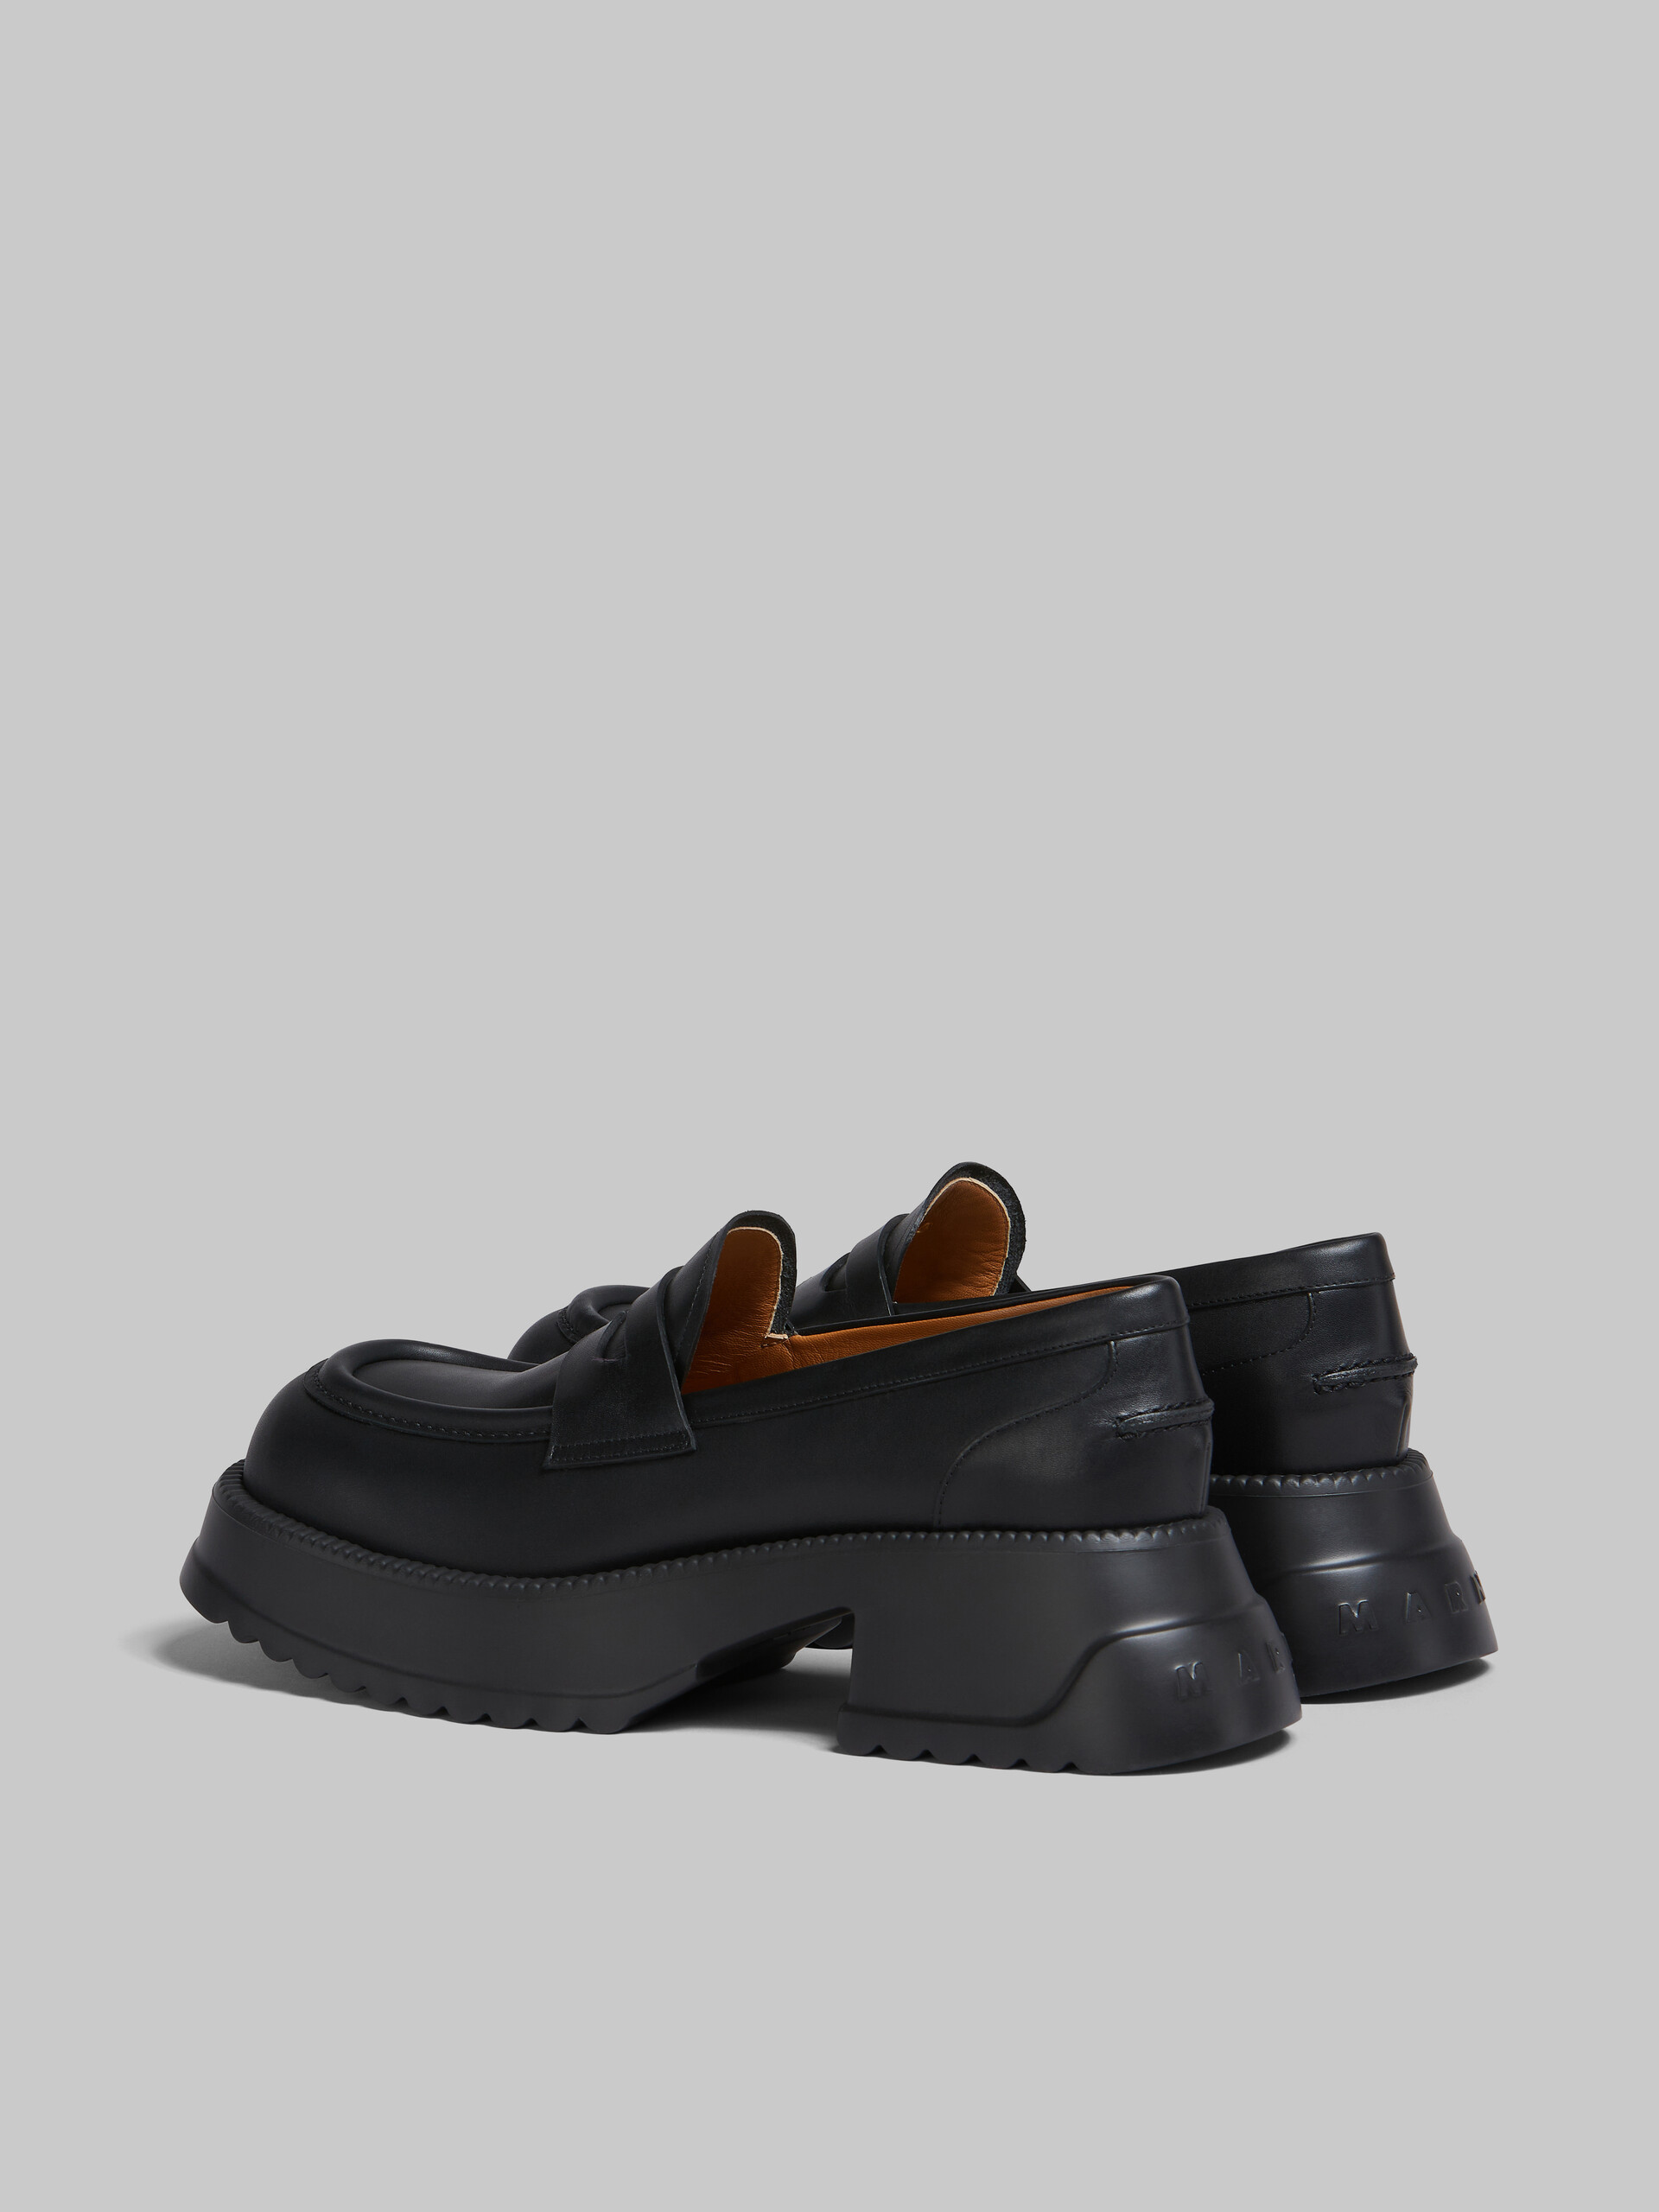 Black leather loafer with platform sole - Mocassin - Image 3